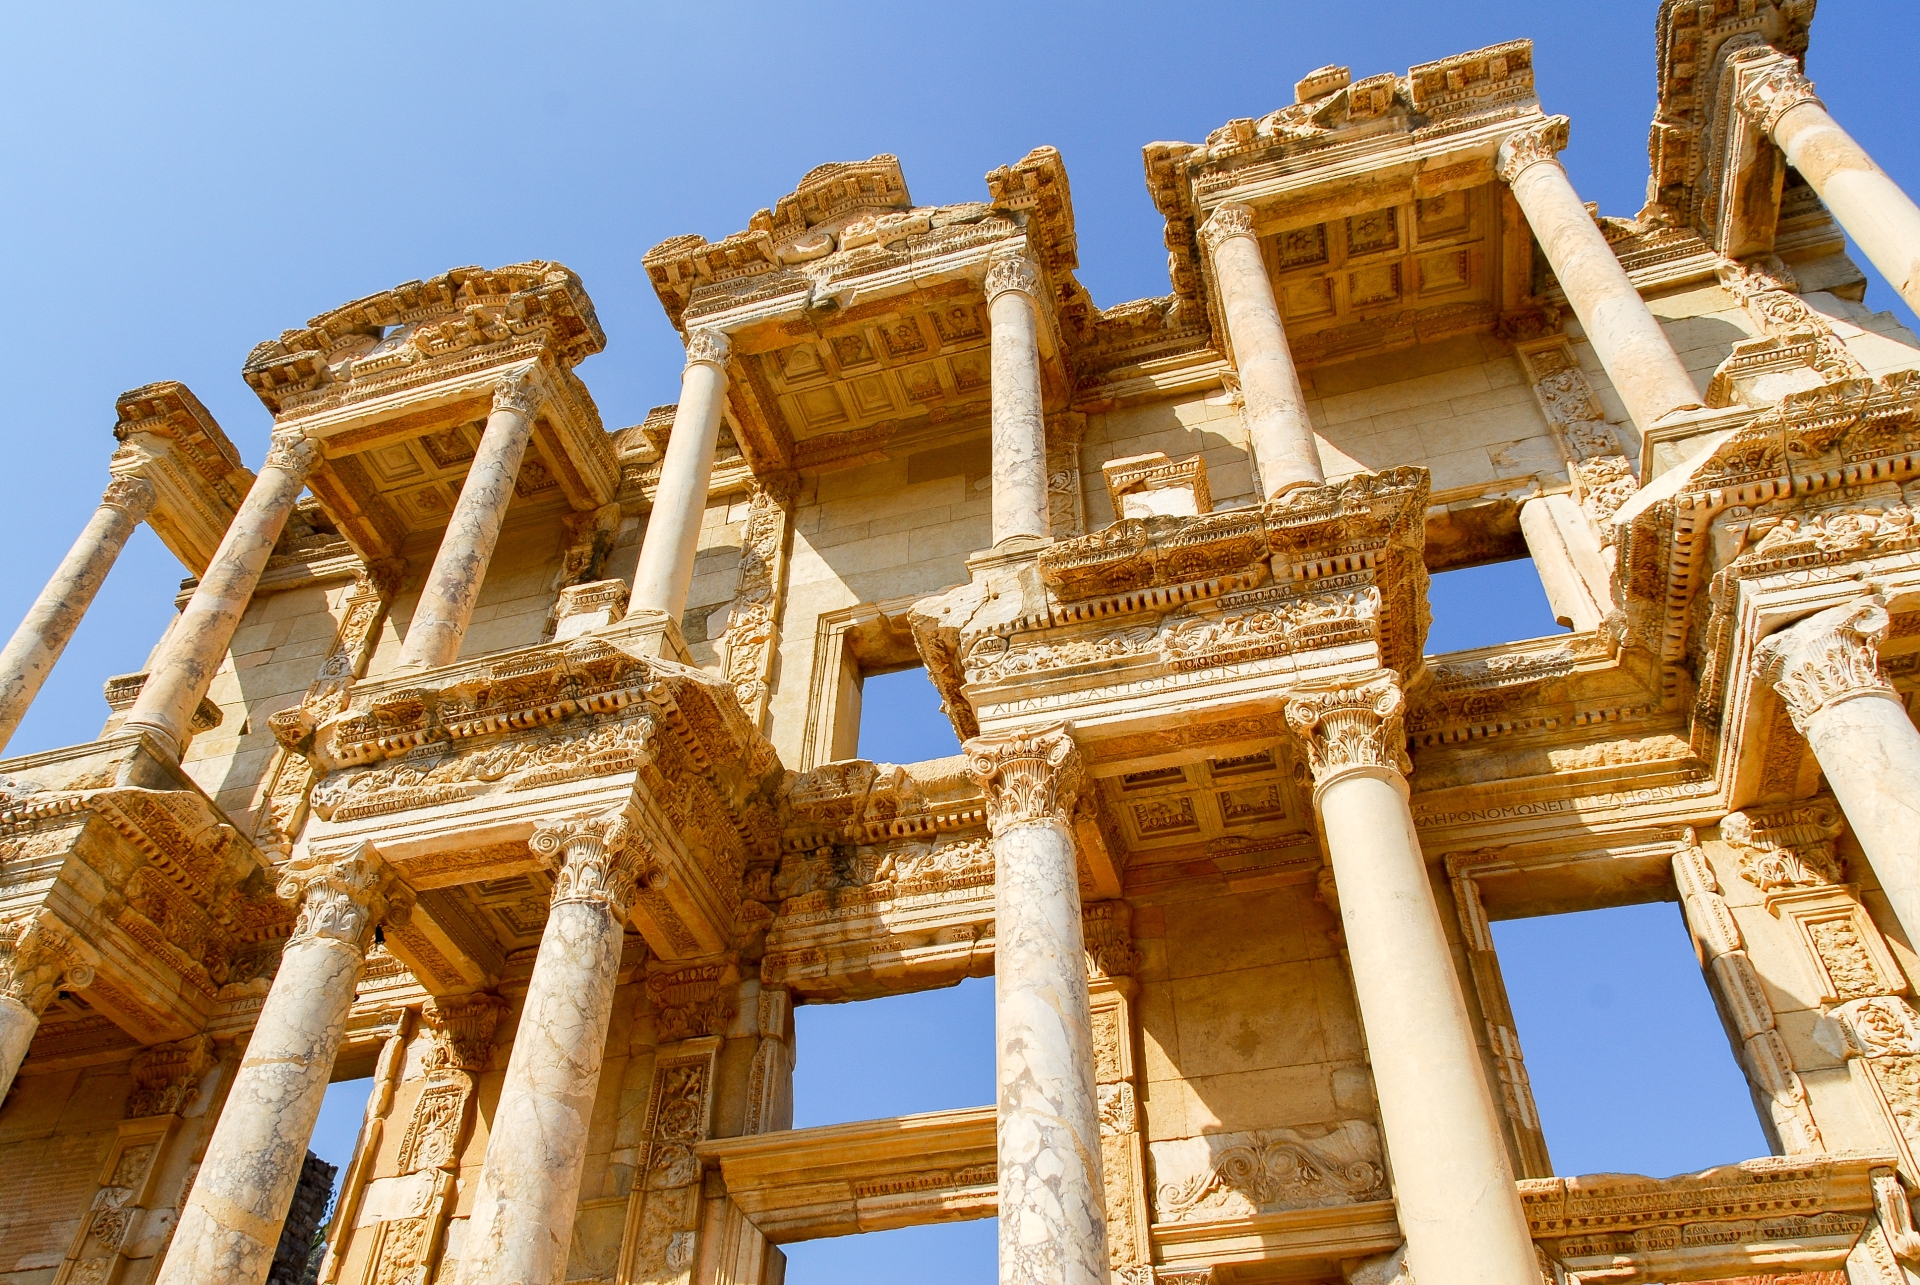 The Ancient city of Ephesus